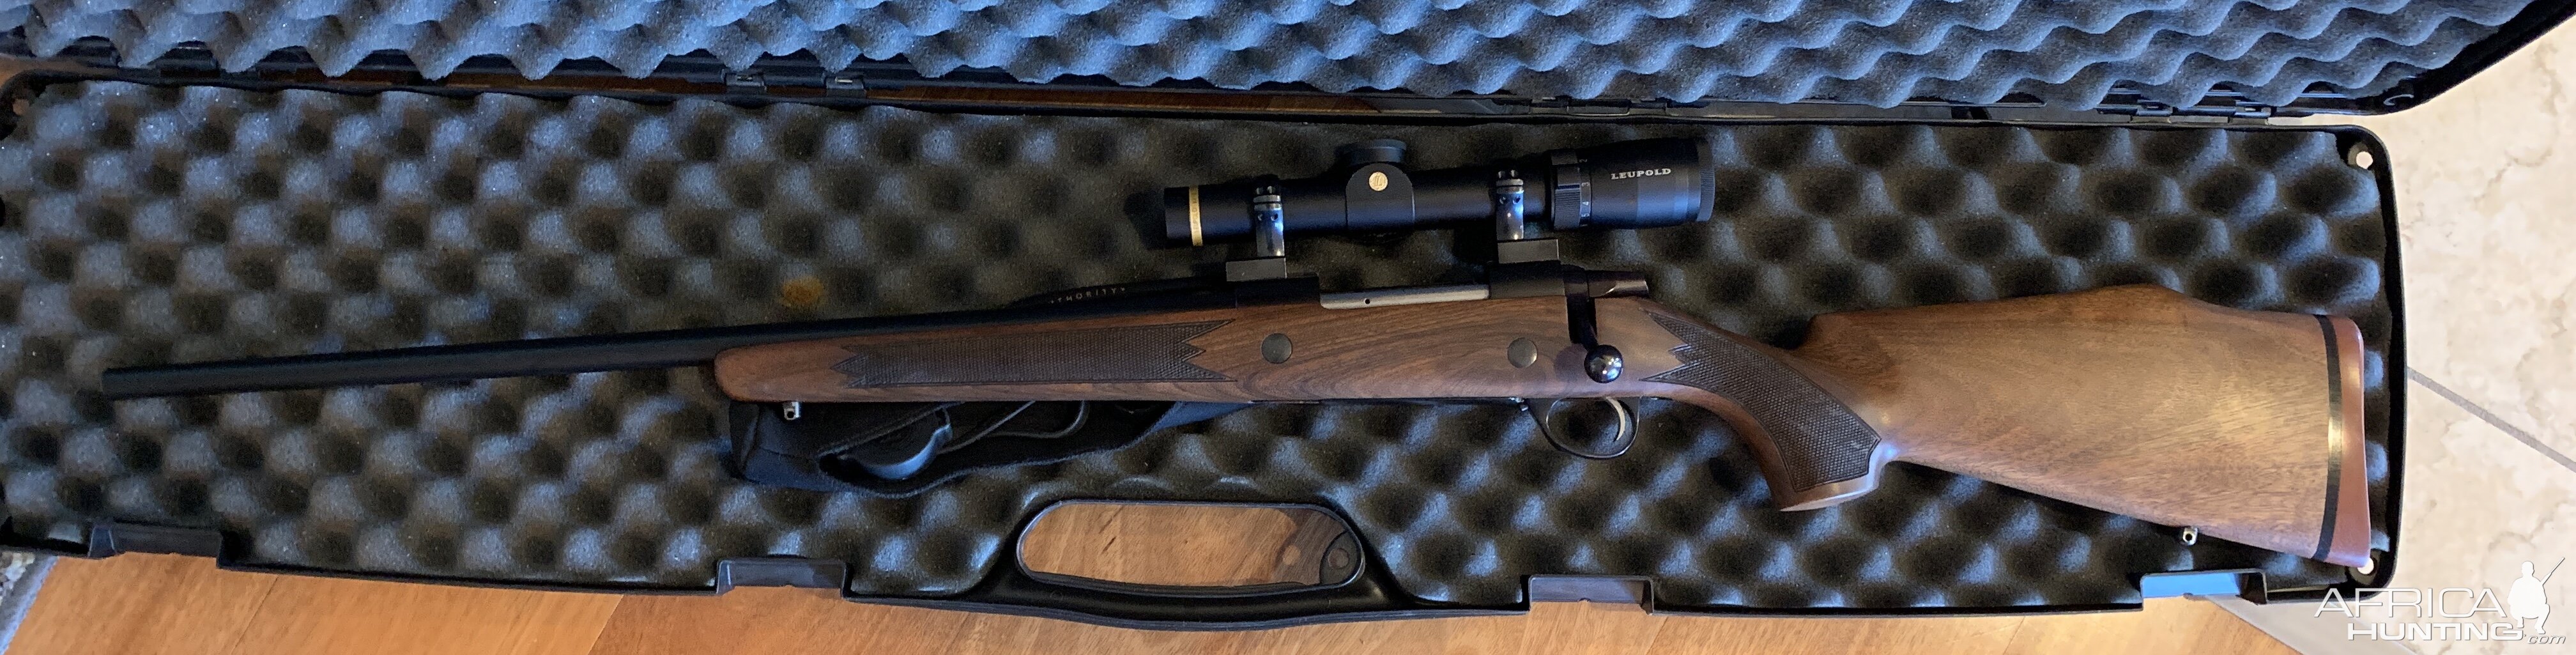 Sako AV Rifle with a Leupold VX-6 1x6